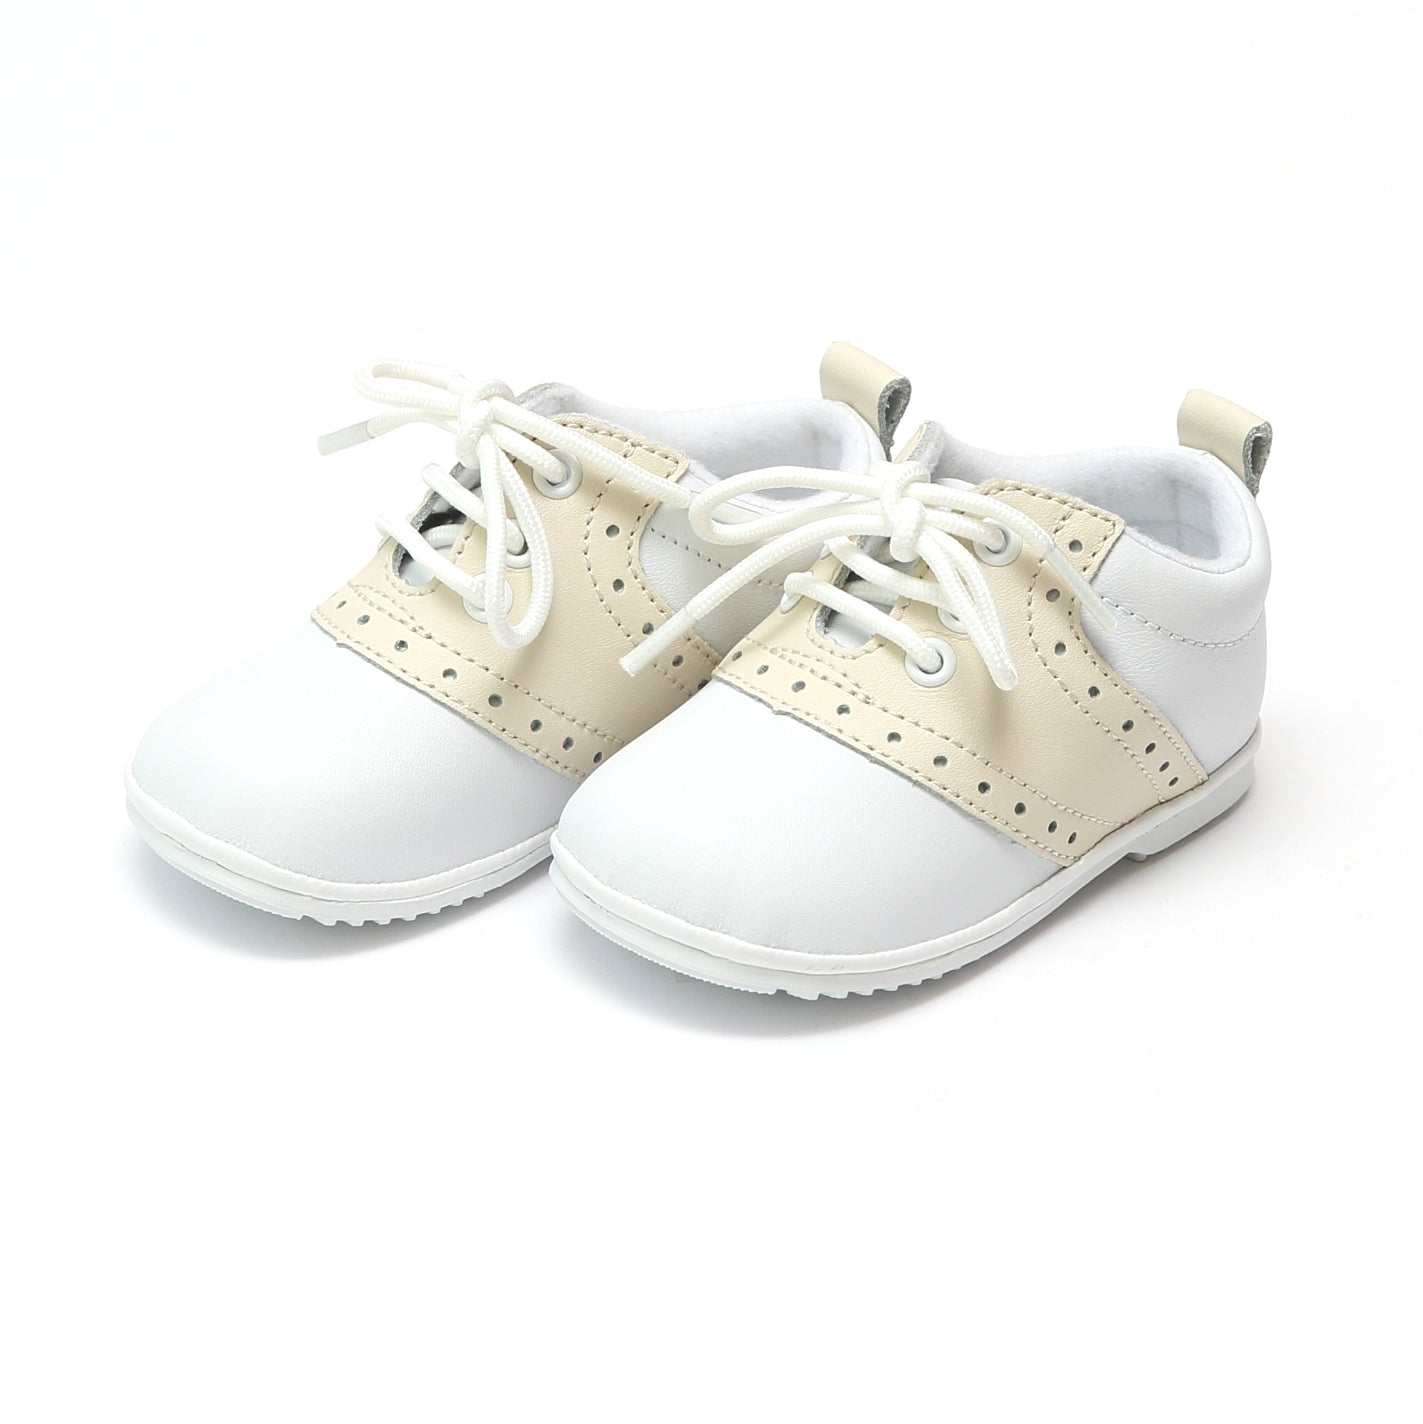 Chaussures premiers pas Aristide caramel - Lazare Kids Shoes